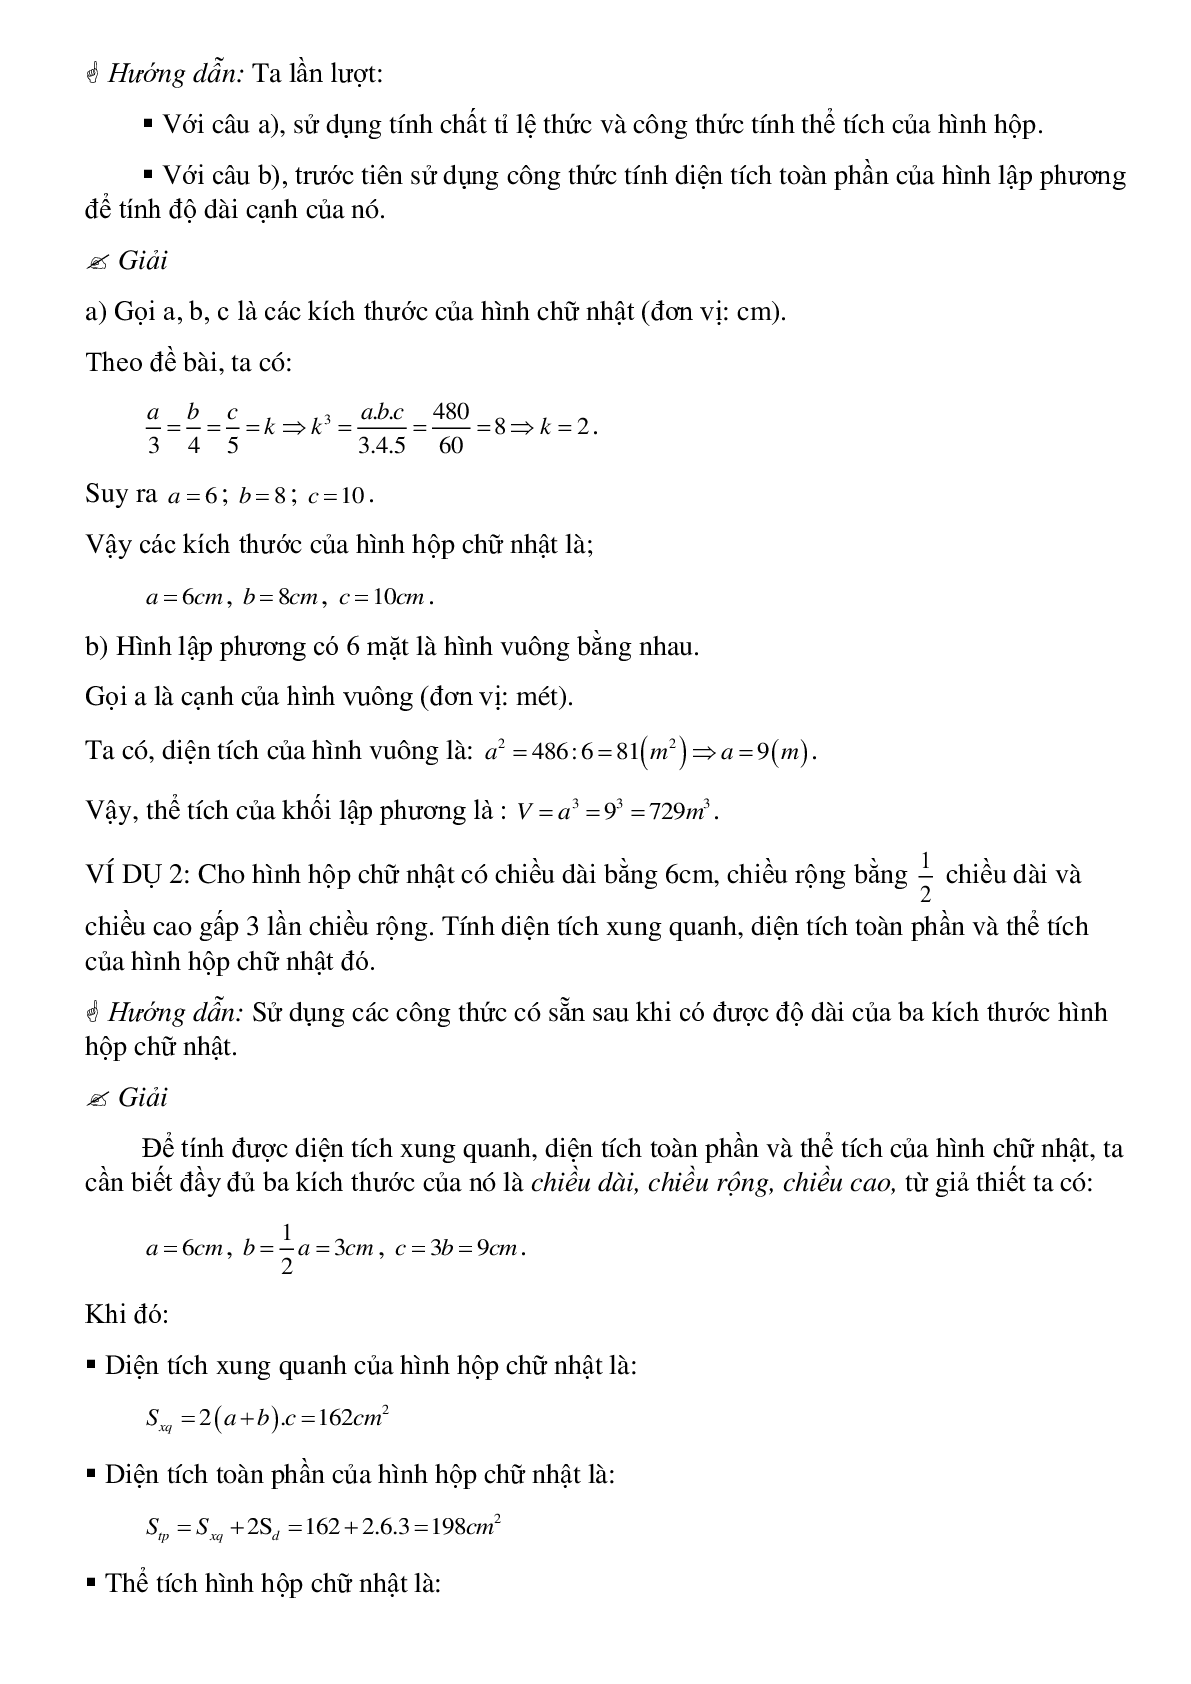 Tổng hợp các dạng toán thường gặp về Thể tích của hình hộp chữ nhật có lời giải (trang 7)